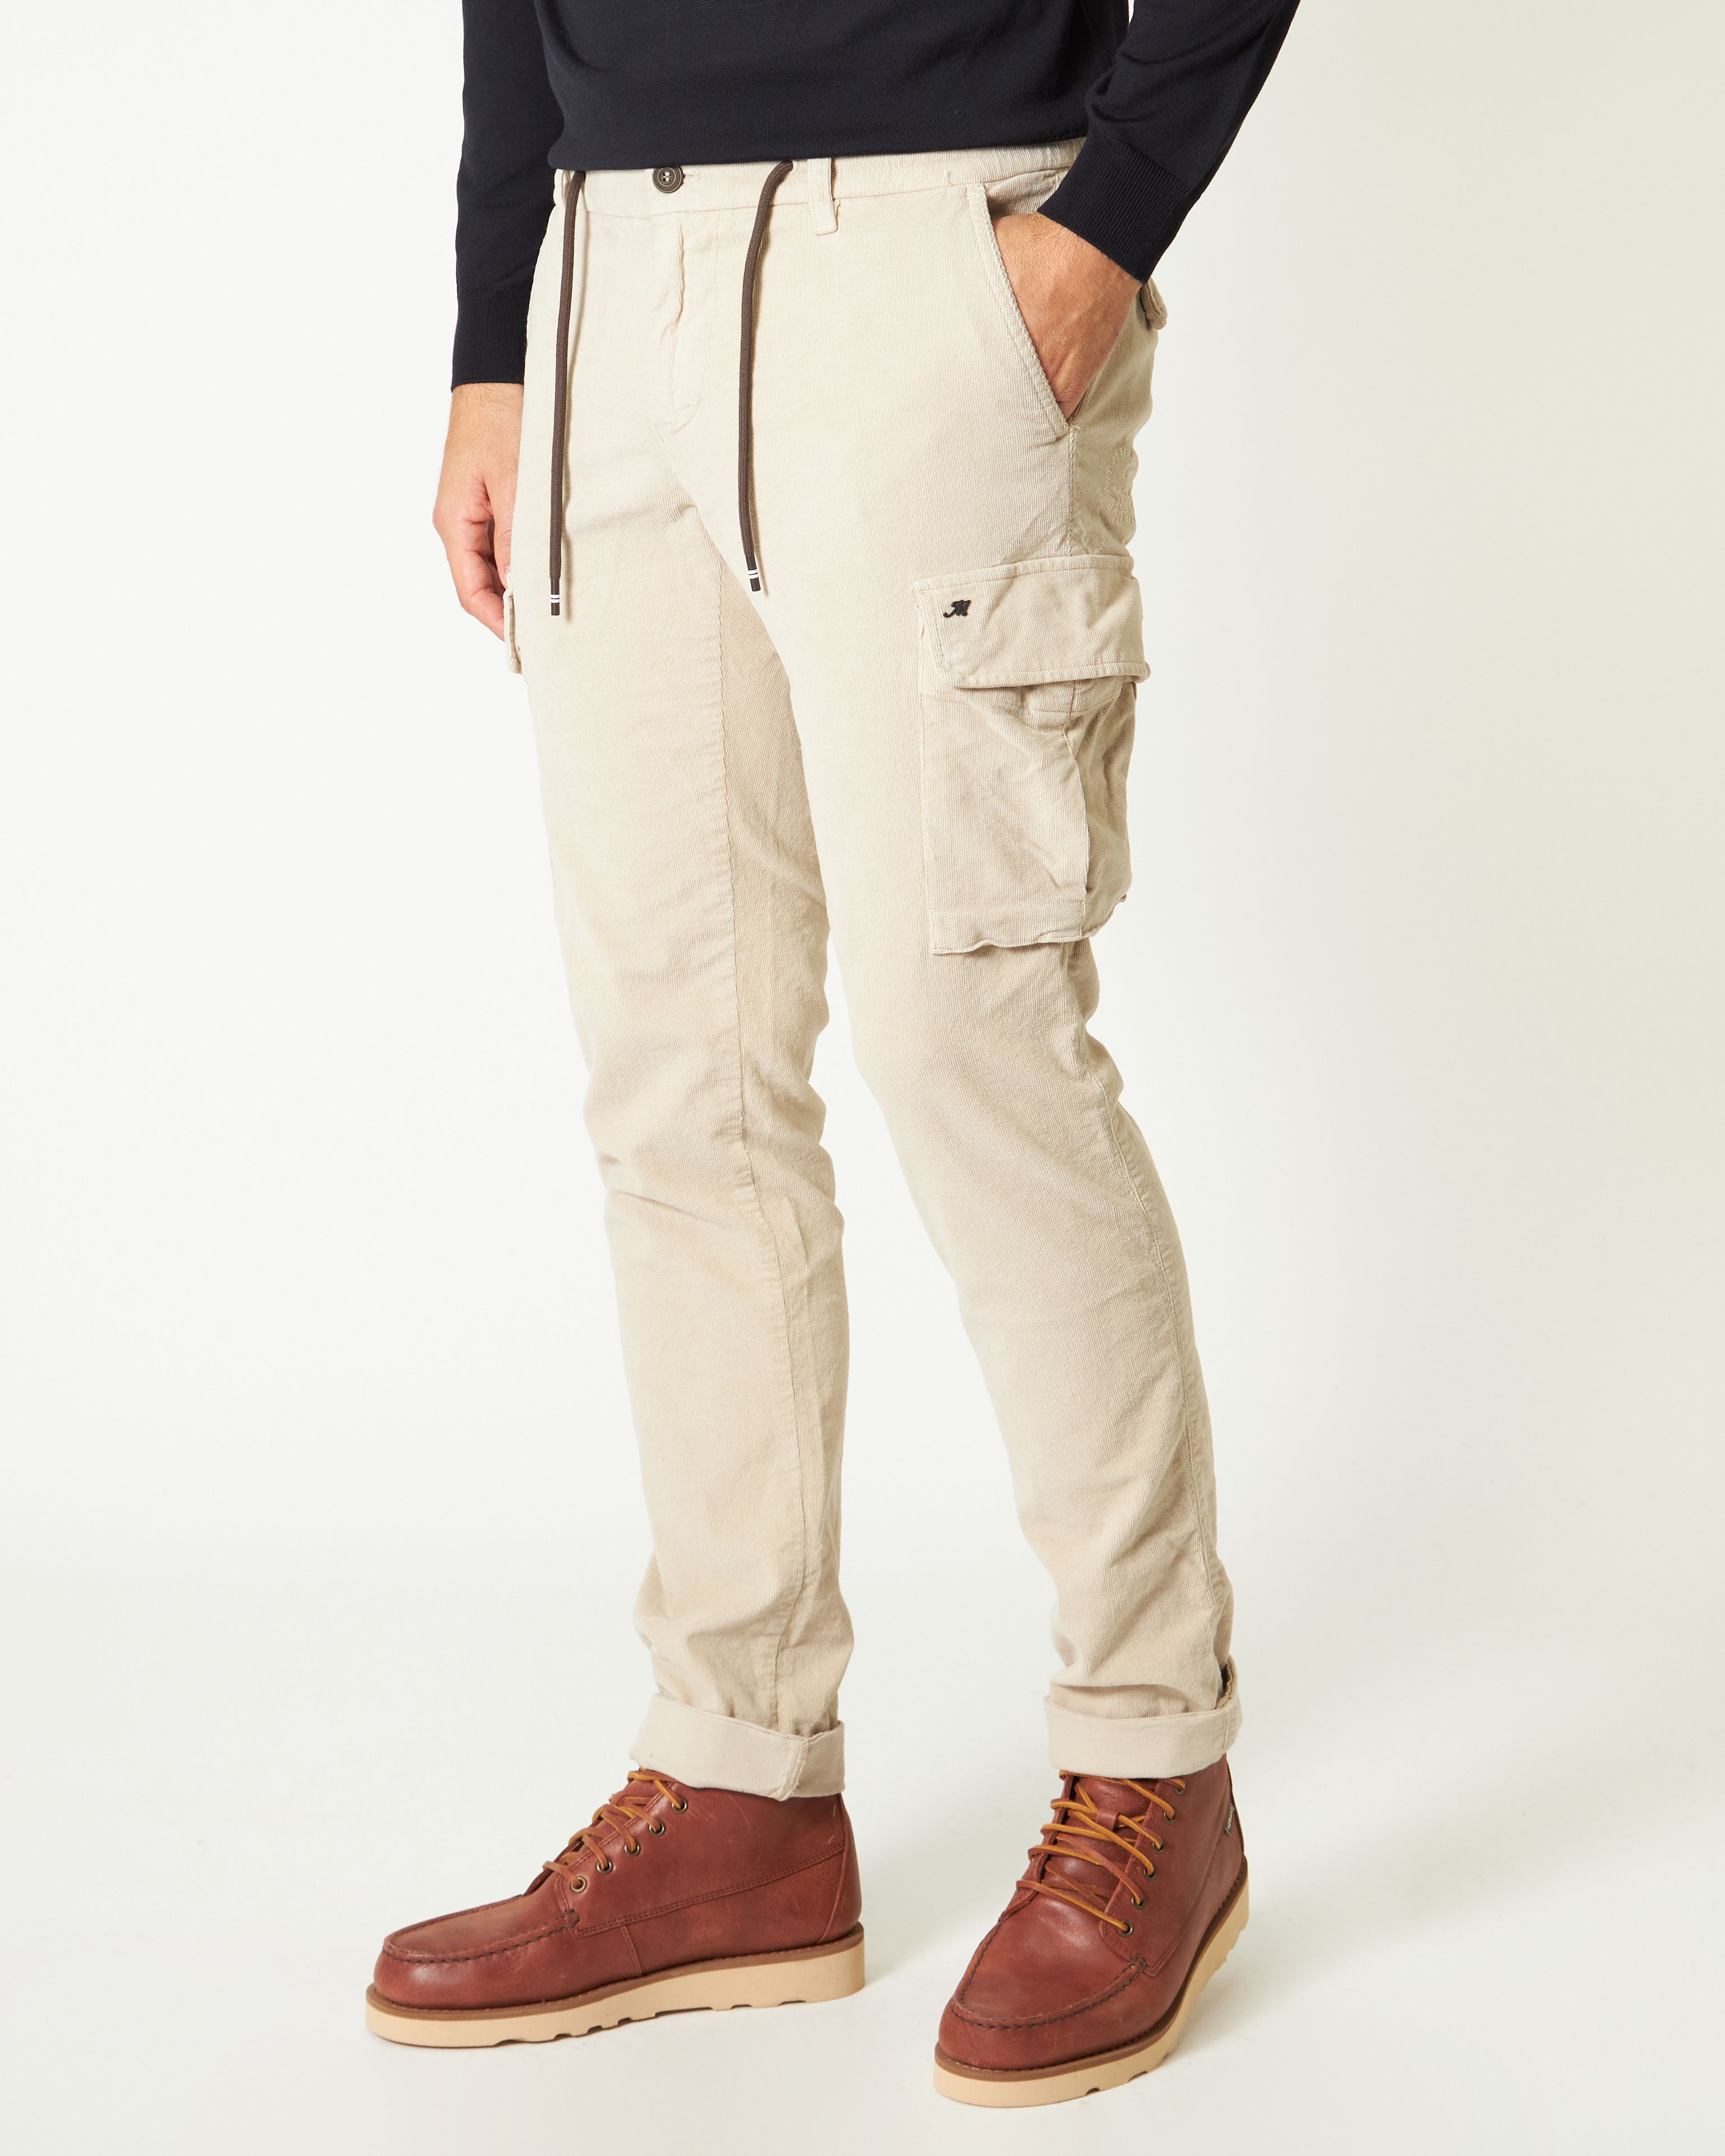 Pantalone cargo Chile Jogger in velluto di cotone strecht 2000 righe color gesso